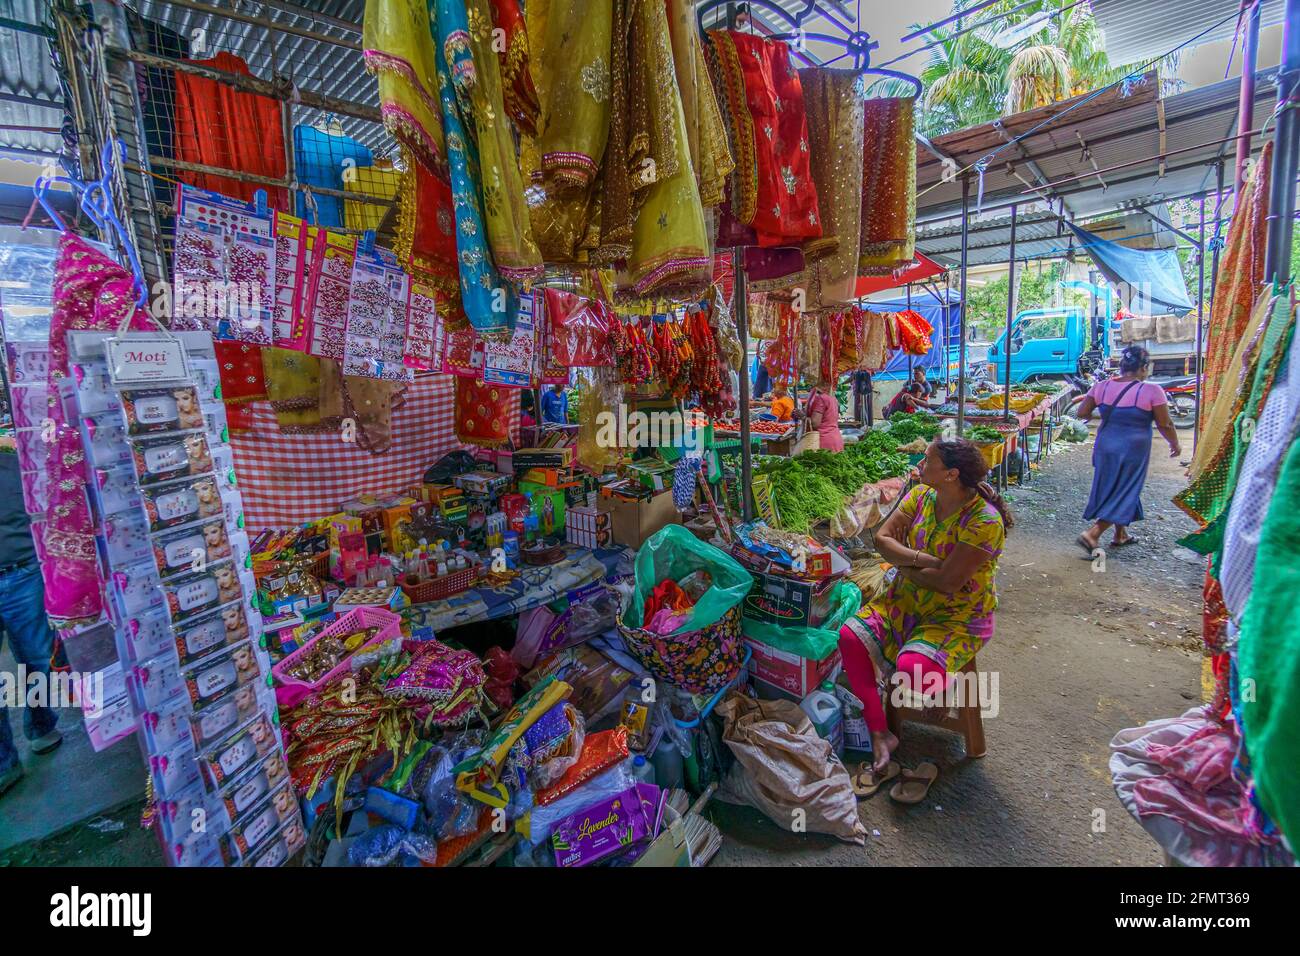 Mauritius Island, Indischer Ozean, Dezember 2015 - Lokale weibliche Verkäuferin, mit verschiedenen Produkten zum Verkauf auf einem offenen Markt Stockfoto